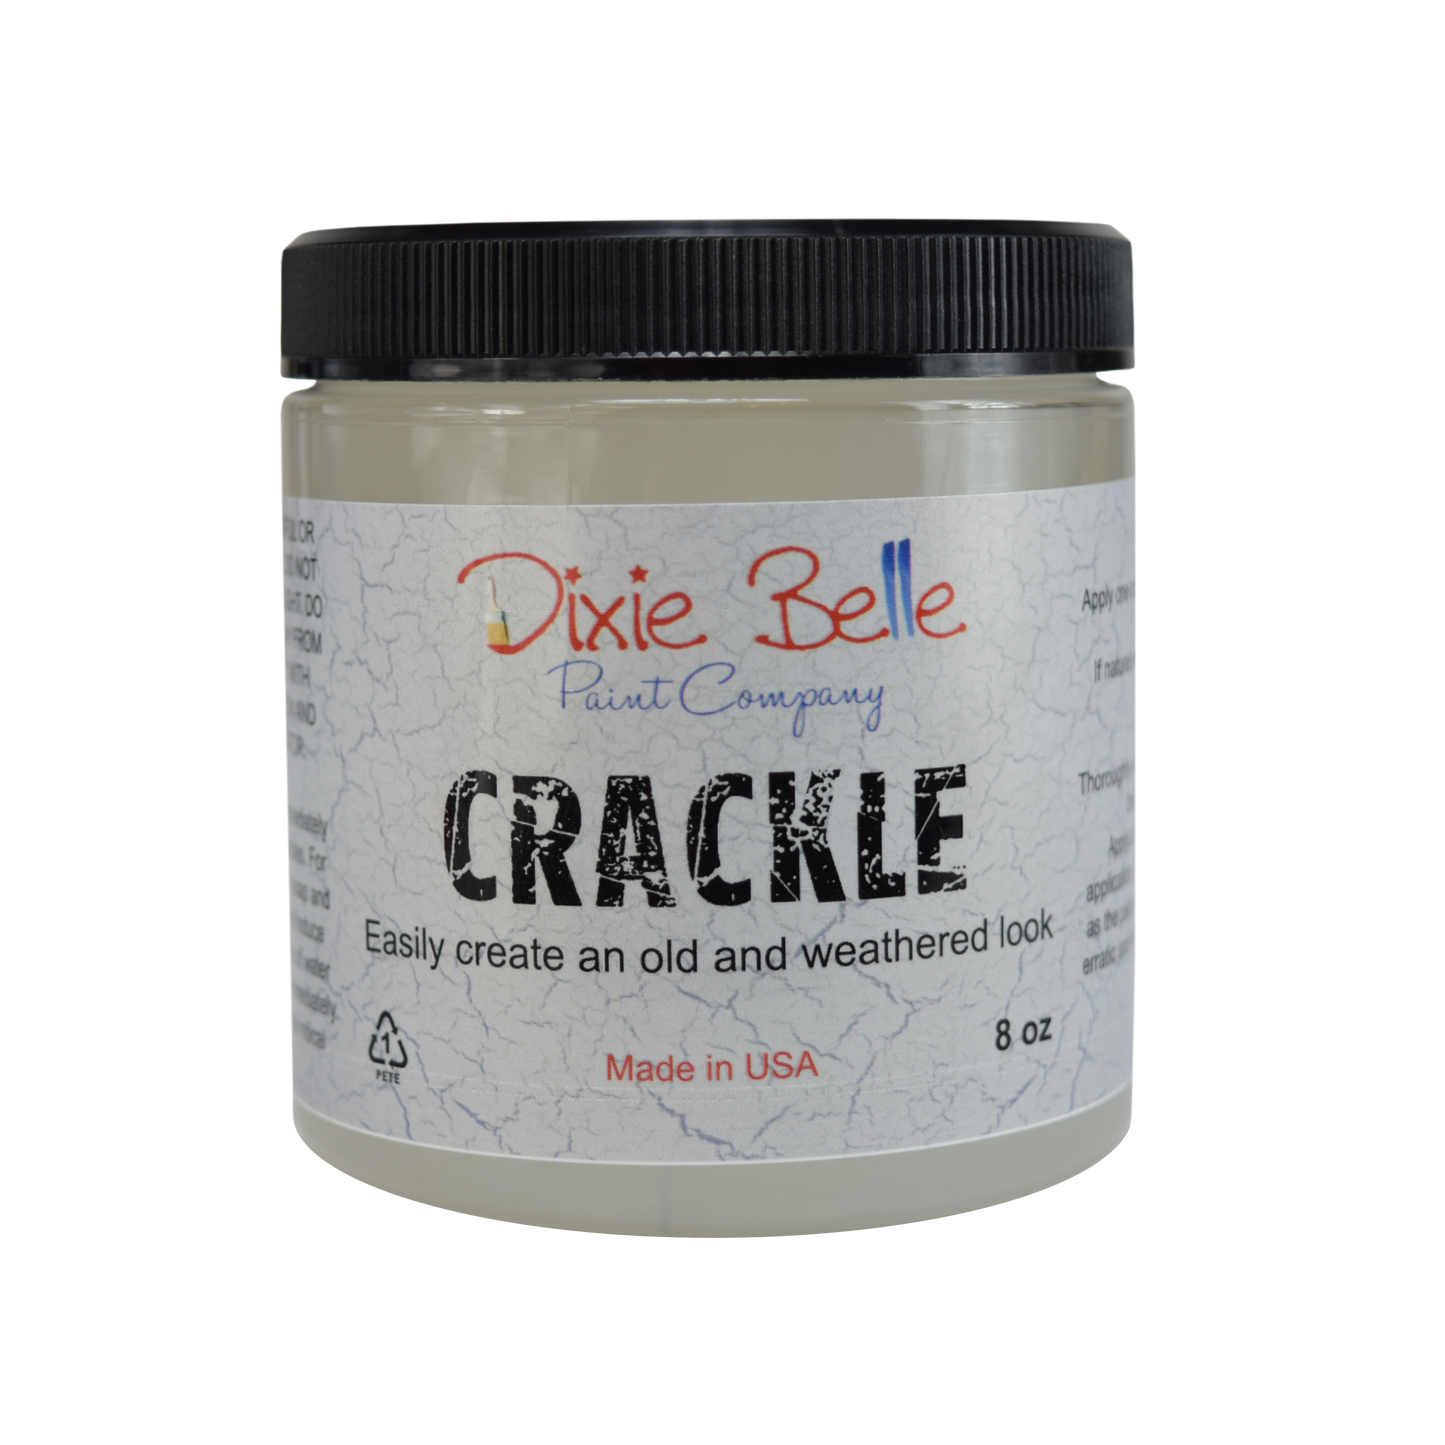 Crackle 8 oz